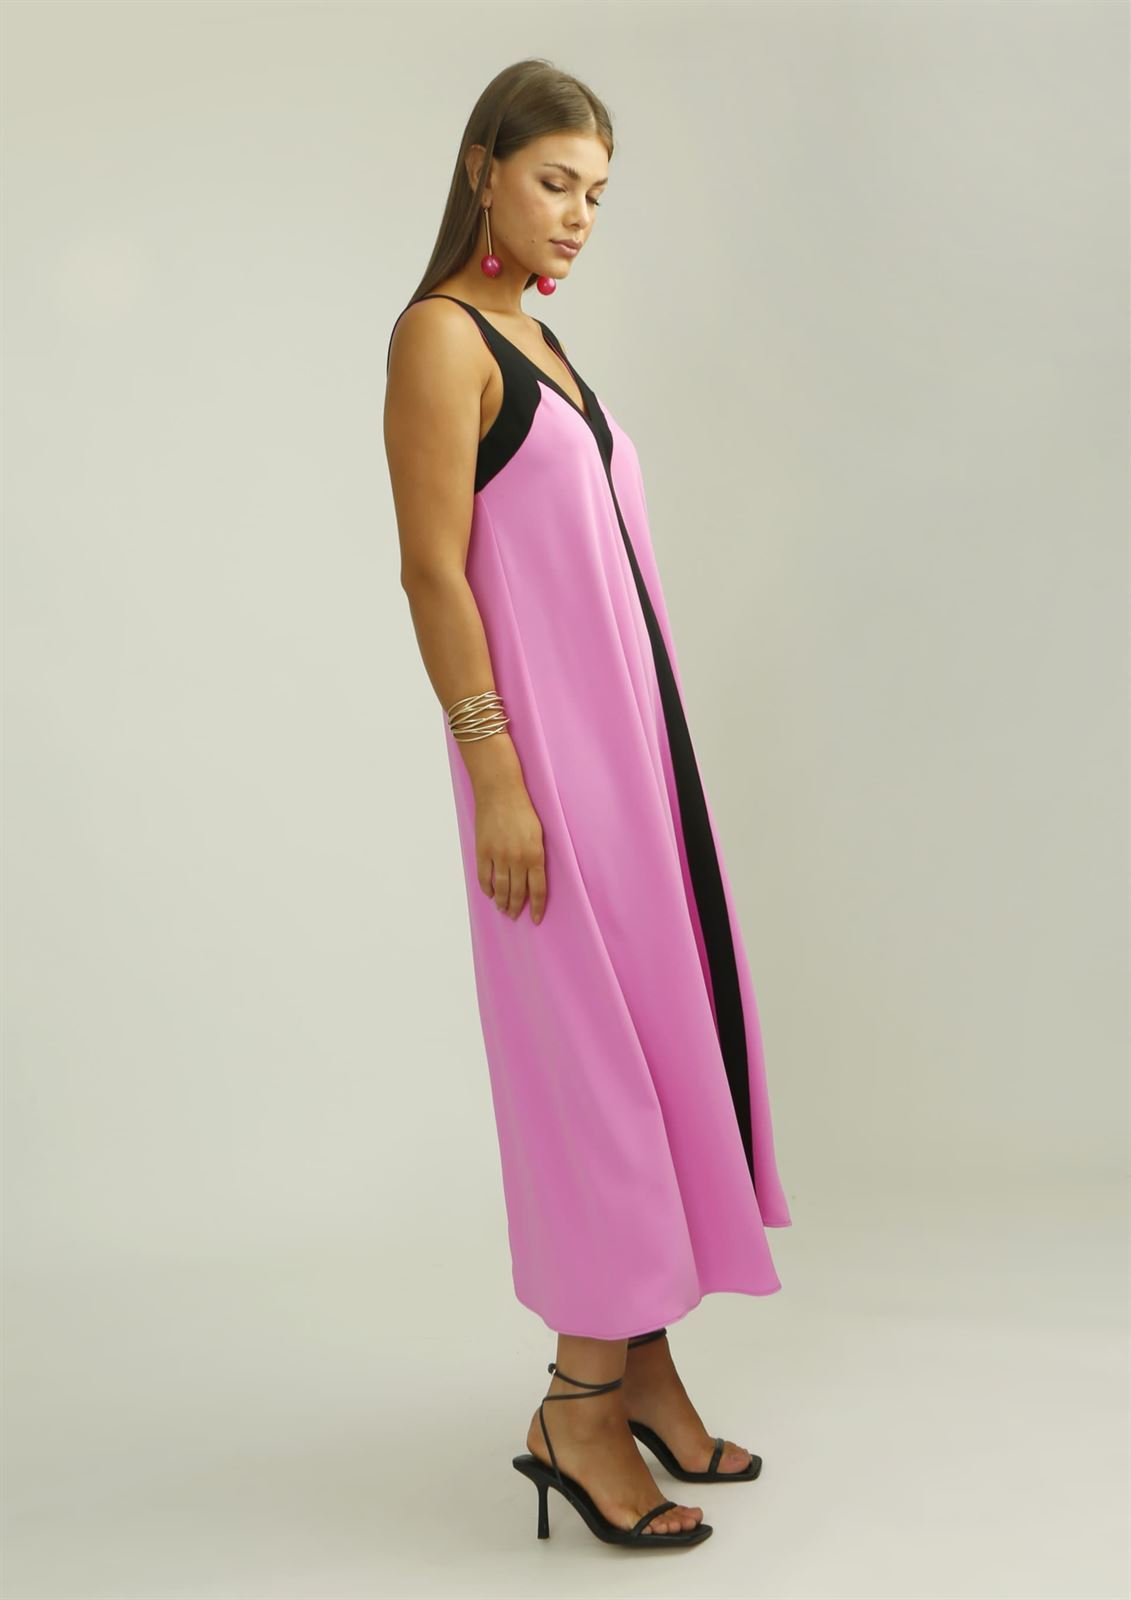 Vestido Alba Conde rosa bicolor - Imagen 2